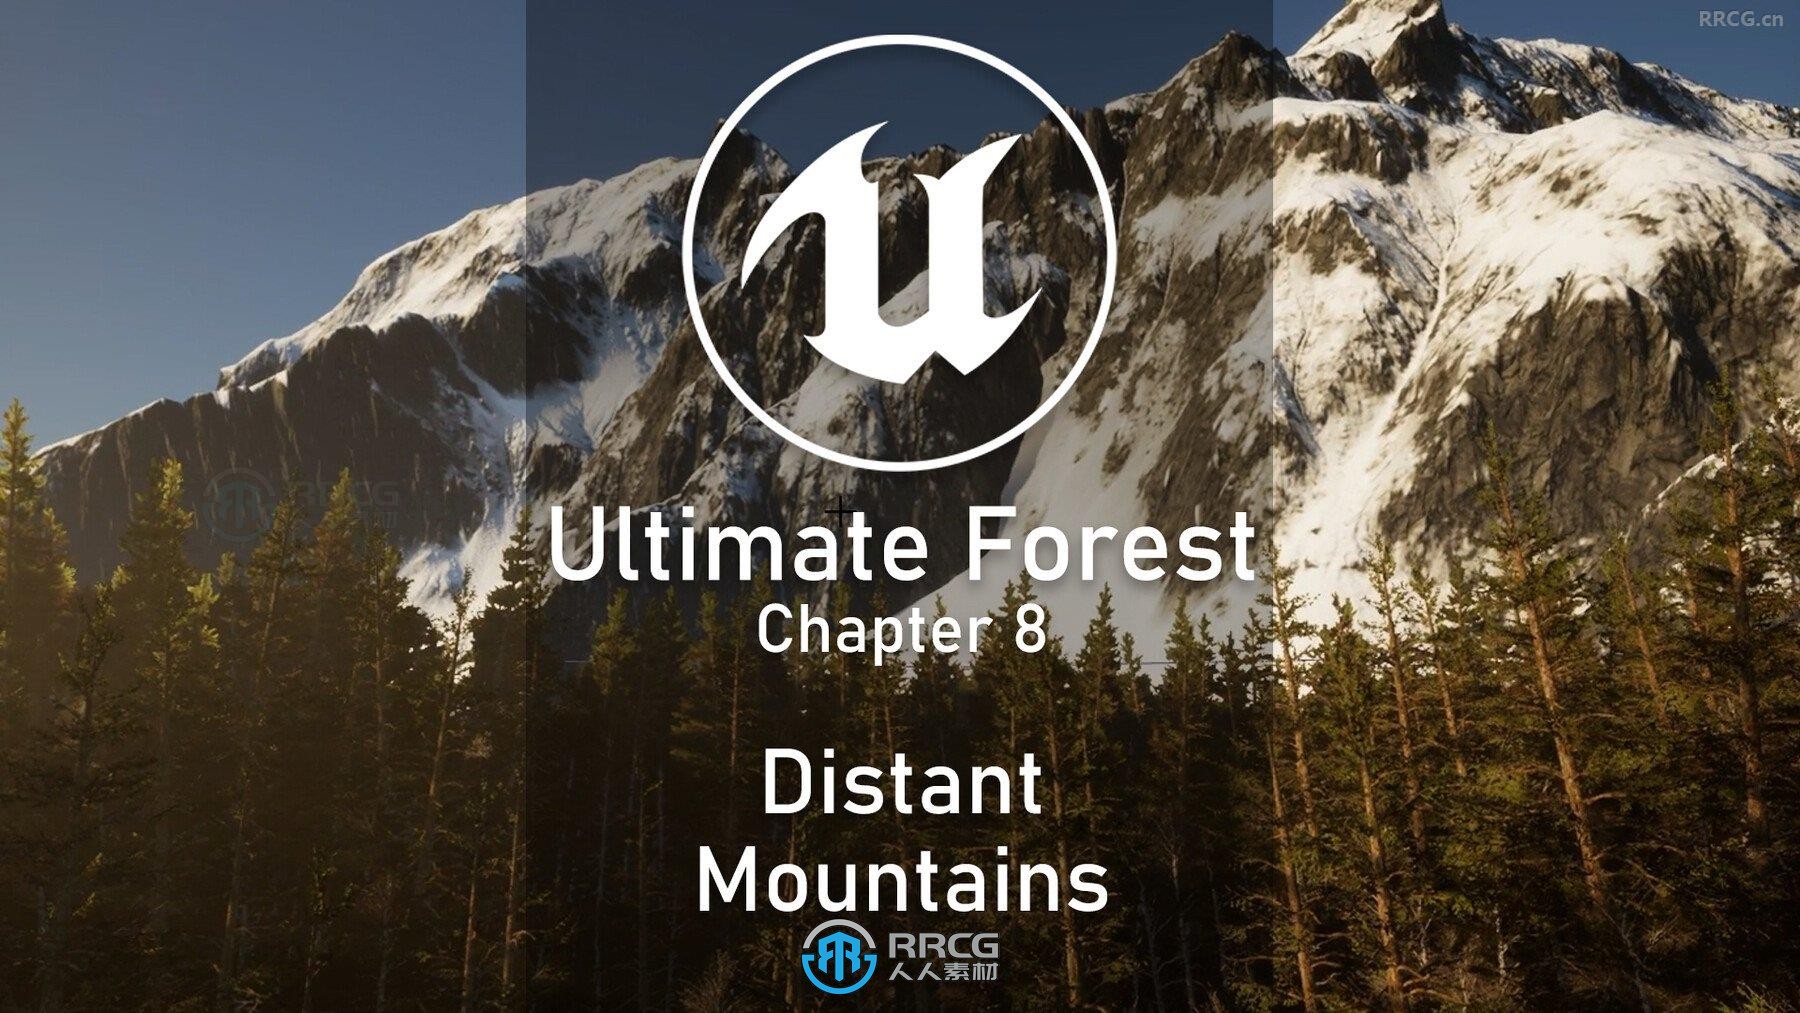 UE5.1虚幻引擎森林环境场景完整制作流程视频教程